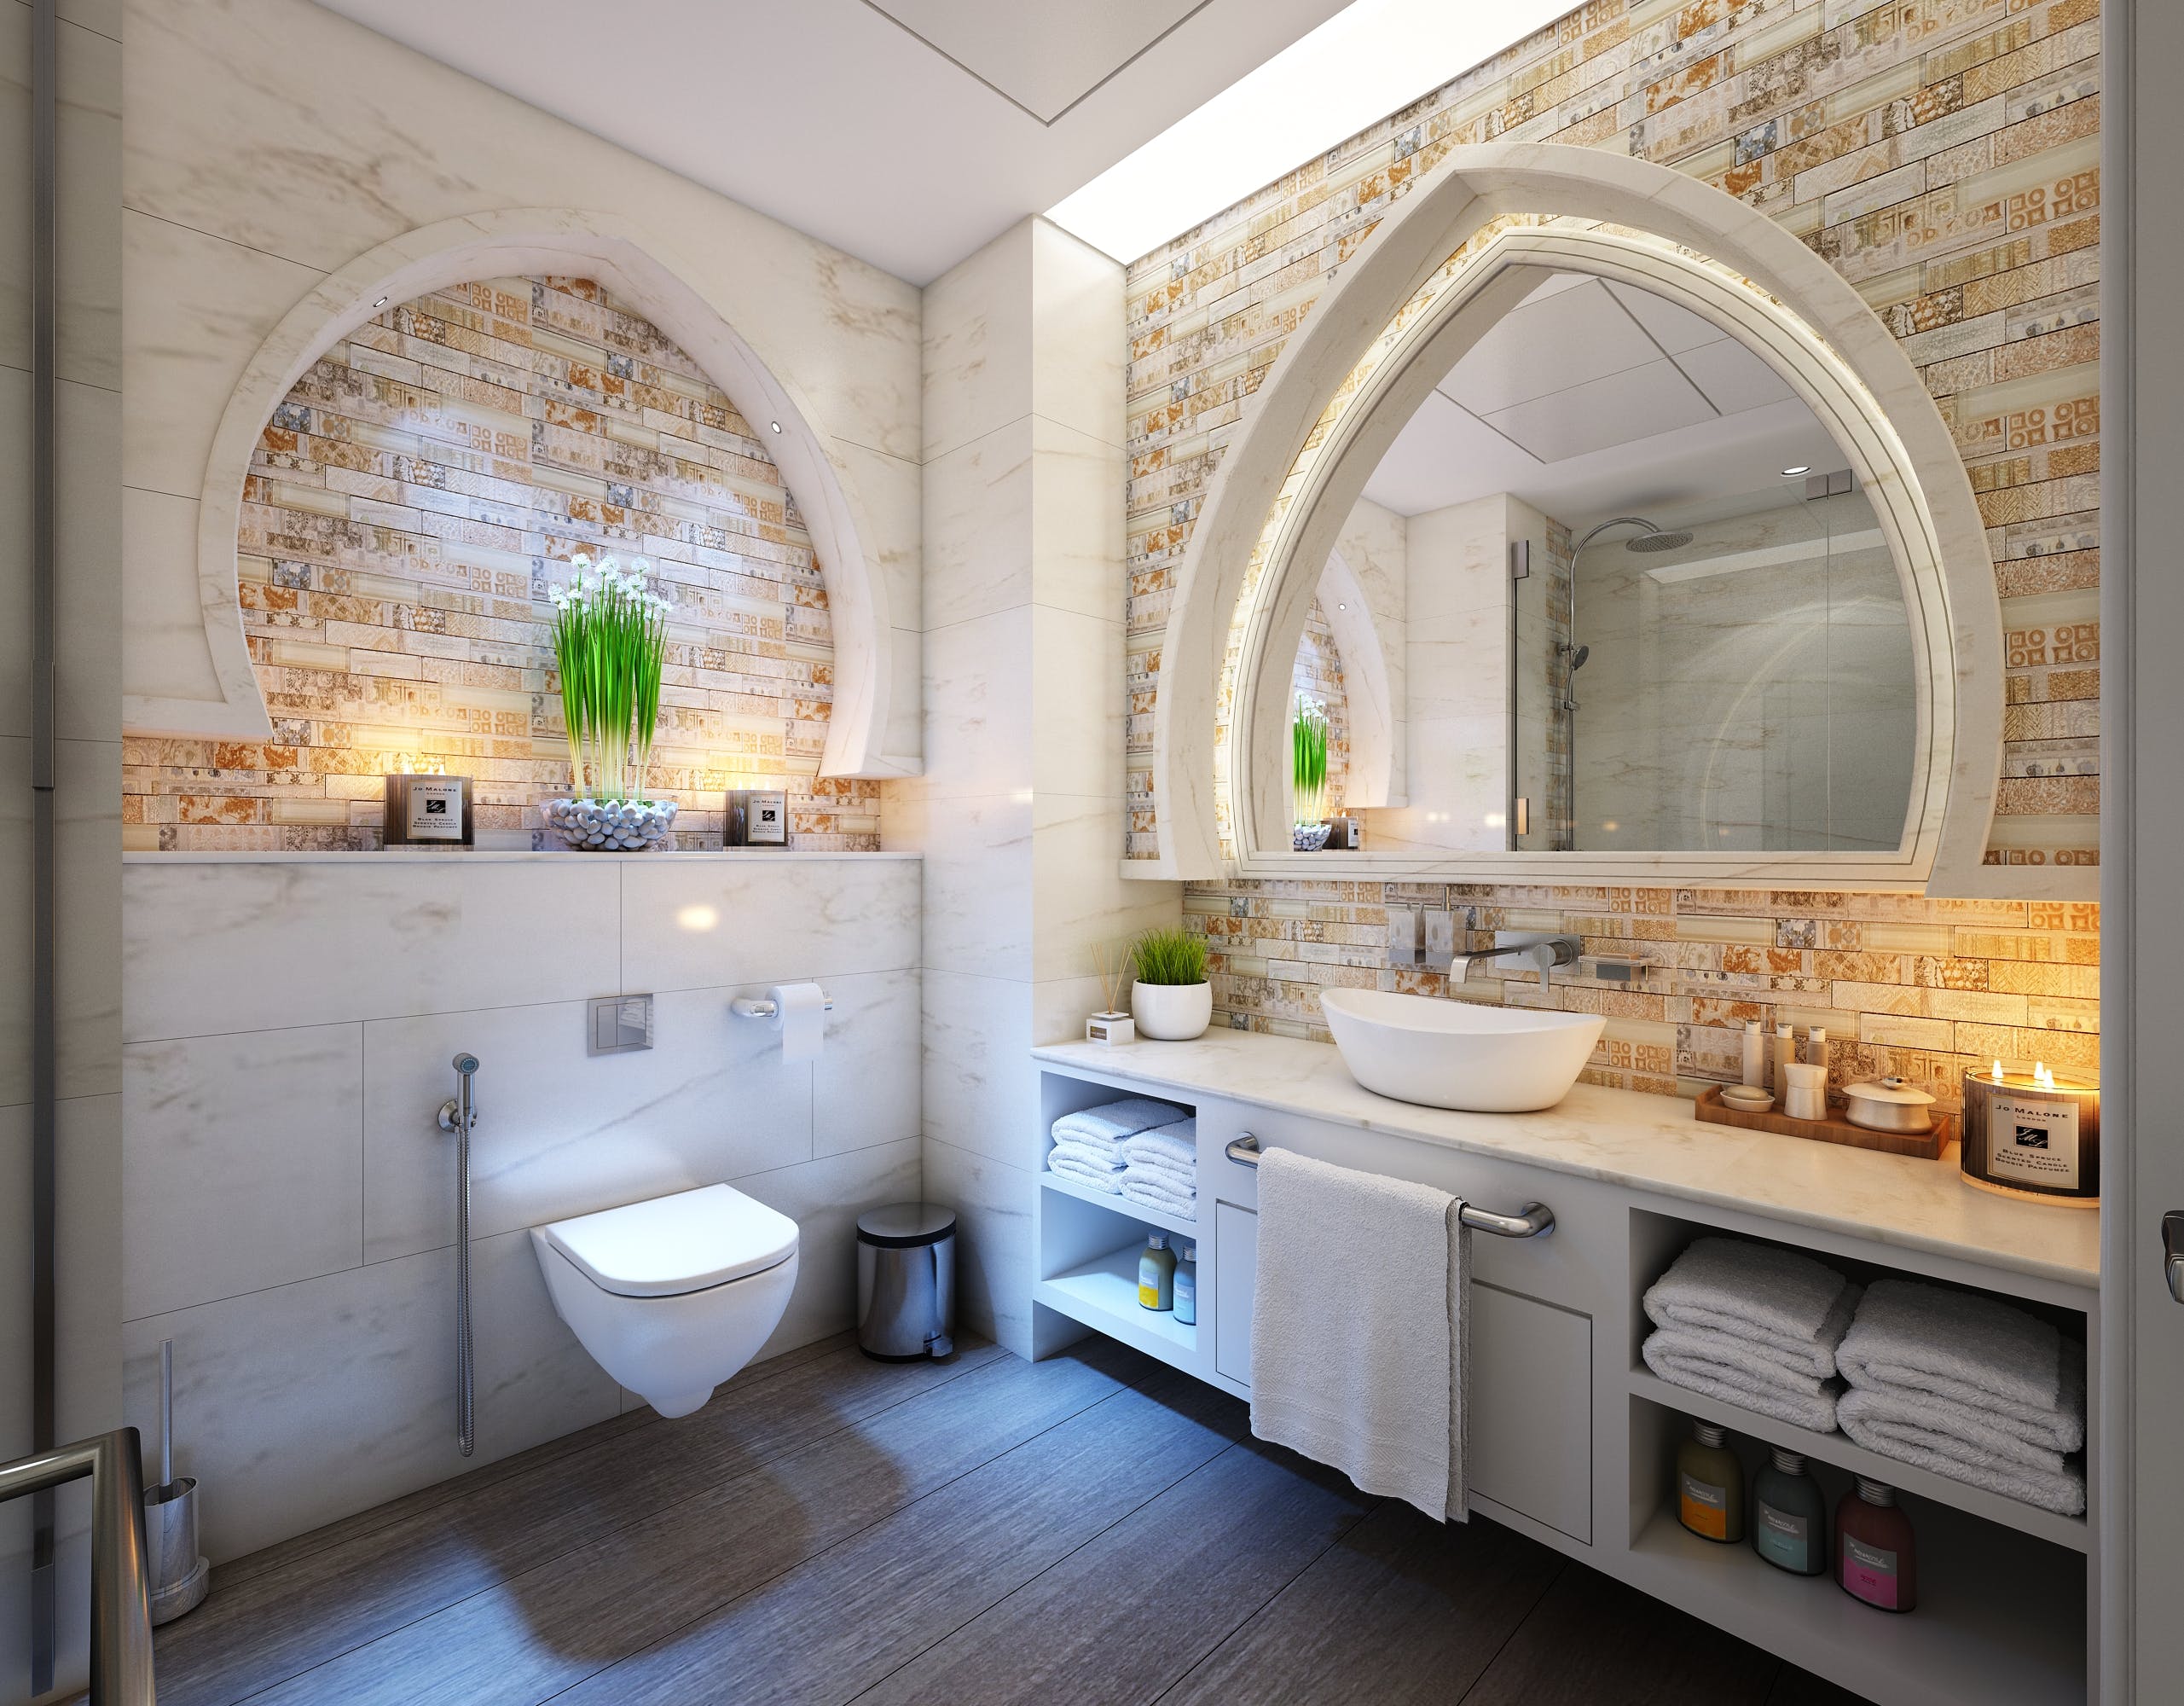 Luxury Bathroom Elements on a Budget Affordable Elegance